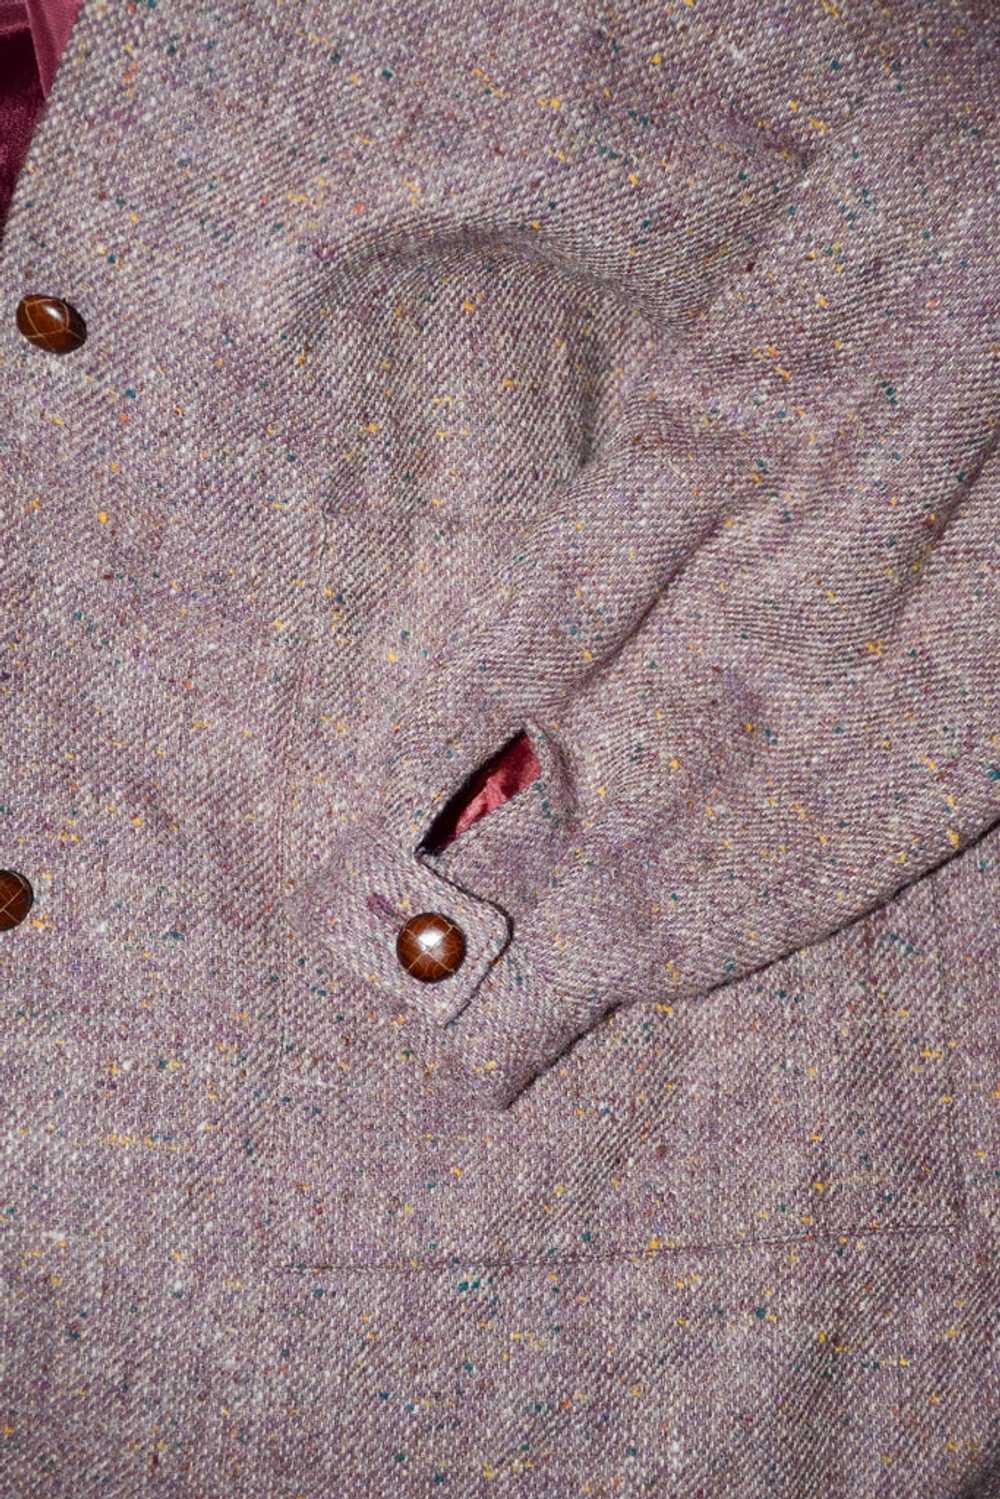 Vintage 70s Tweed Overcoat + Tie Neckline, Dark A… - image 10